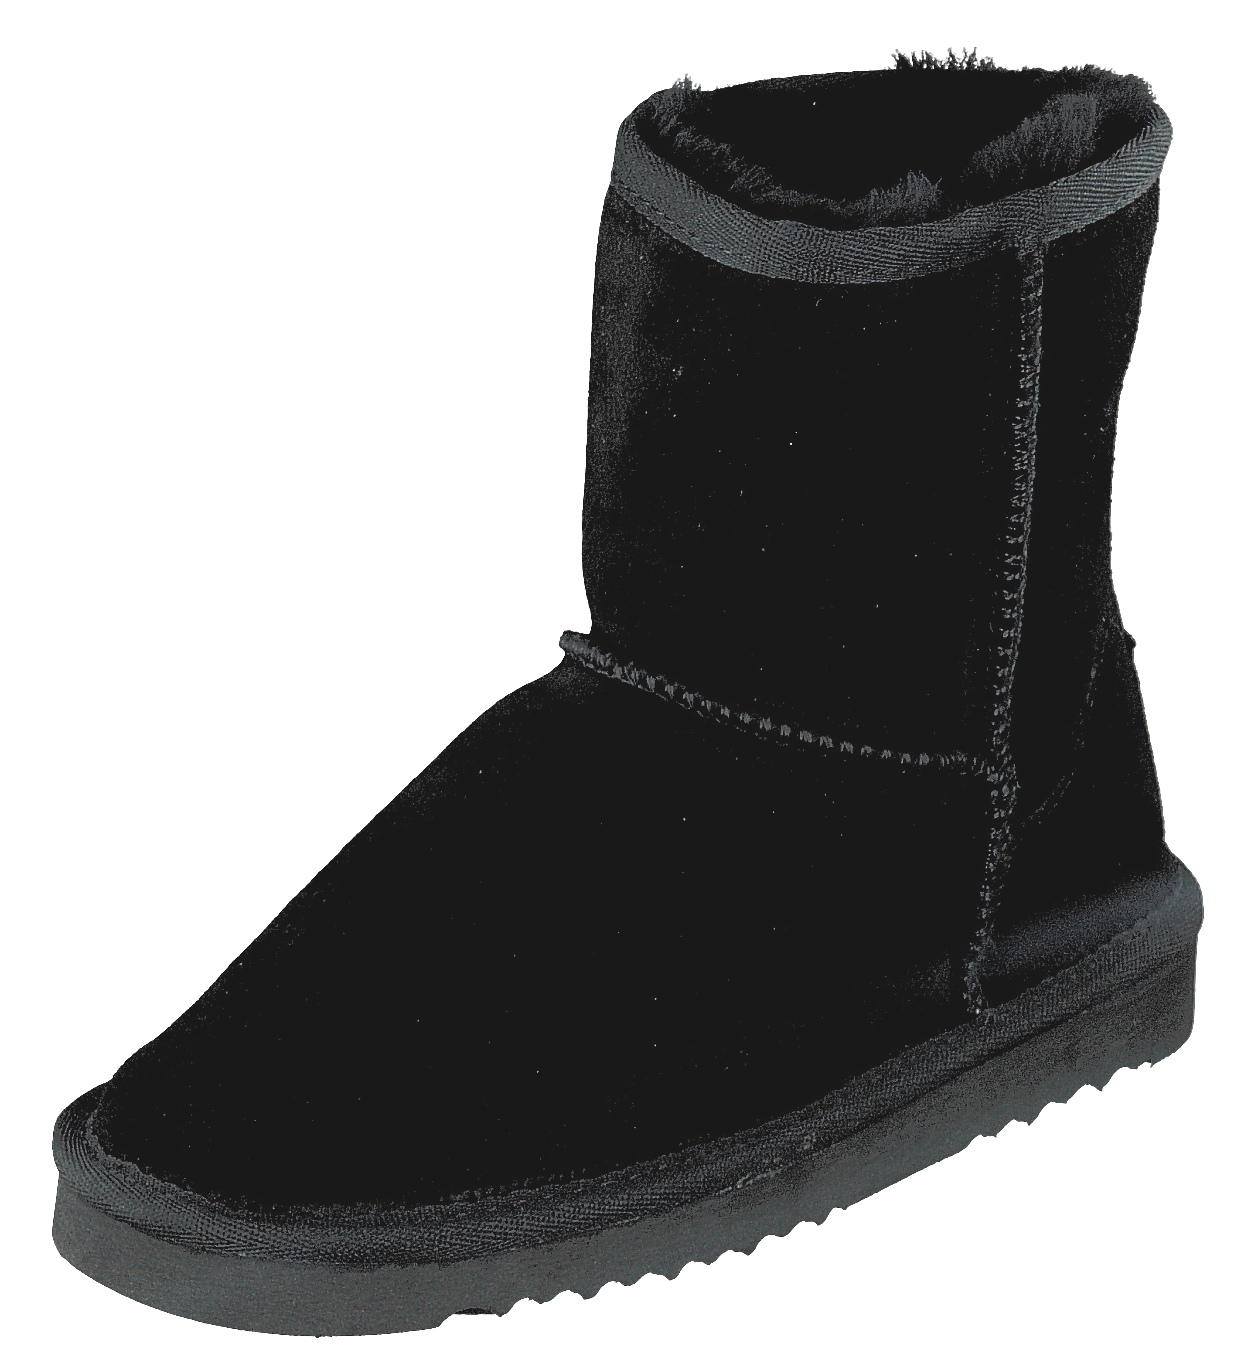 BLK1978 Mädchen Schuhe Winter High-Cut Boots 464-097 Lammfell gefüttert Black